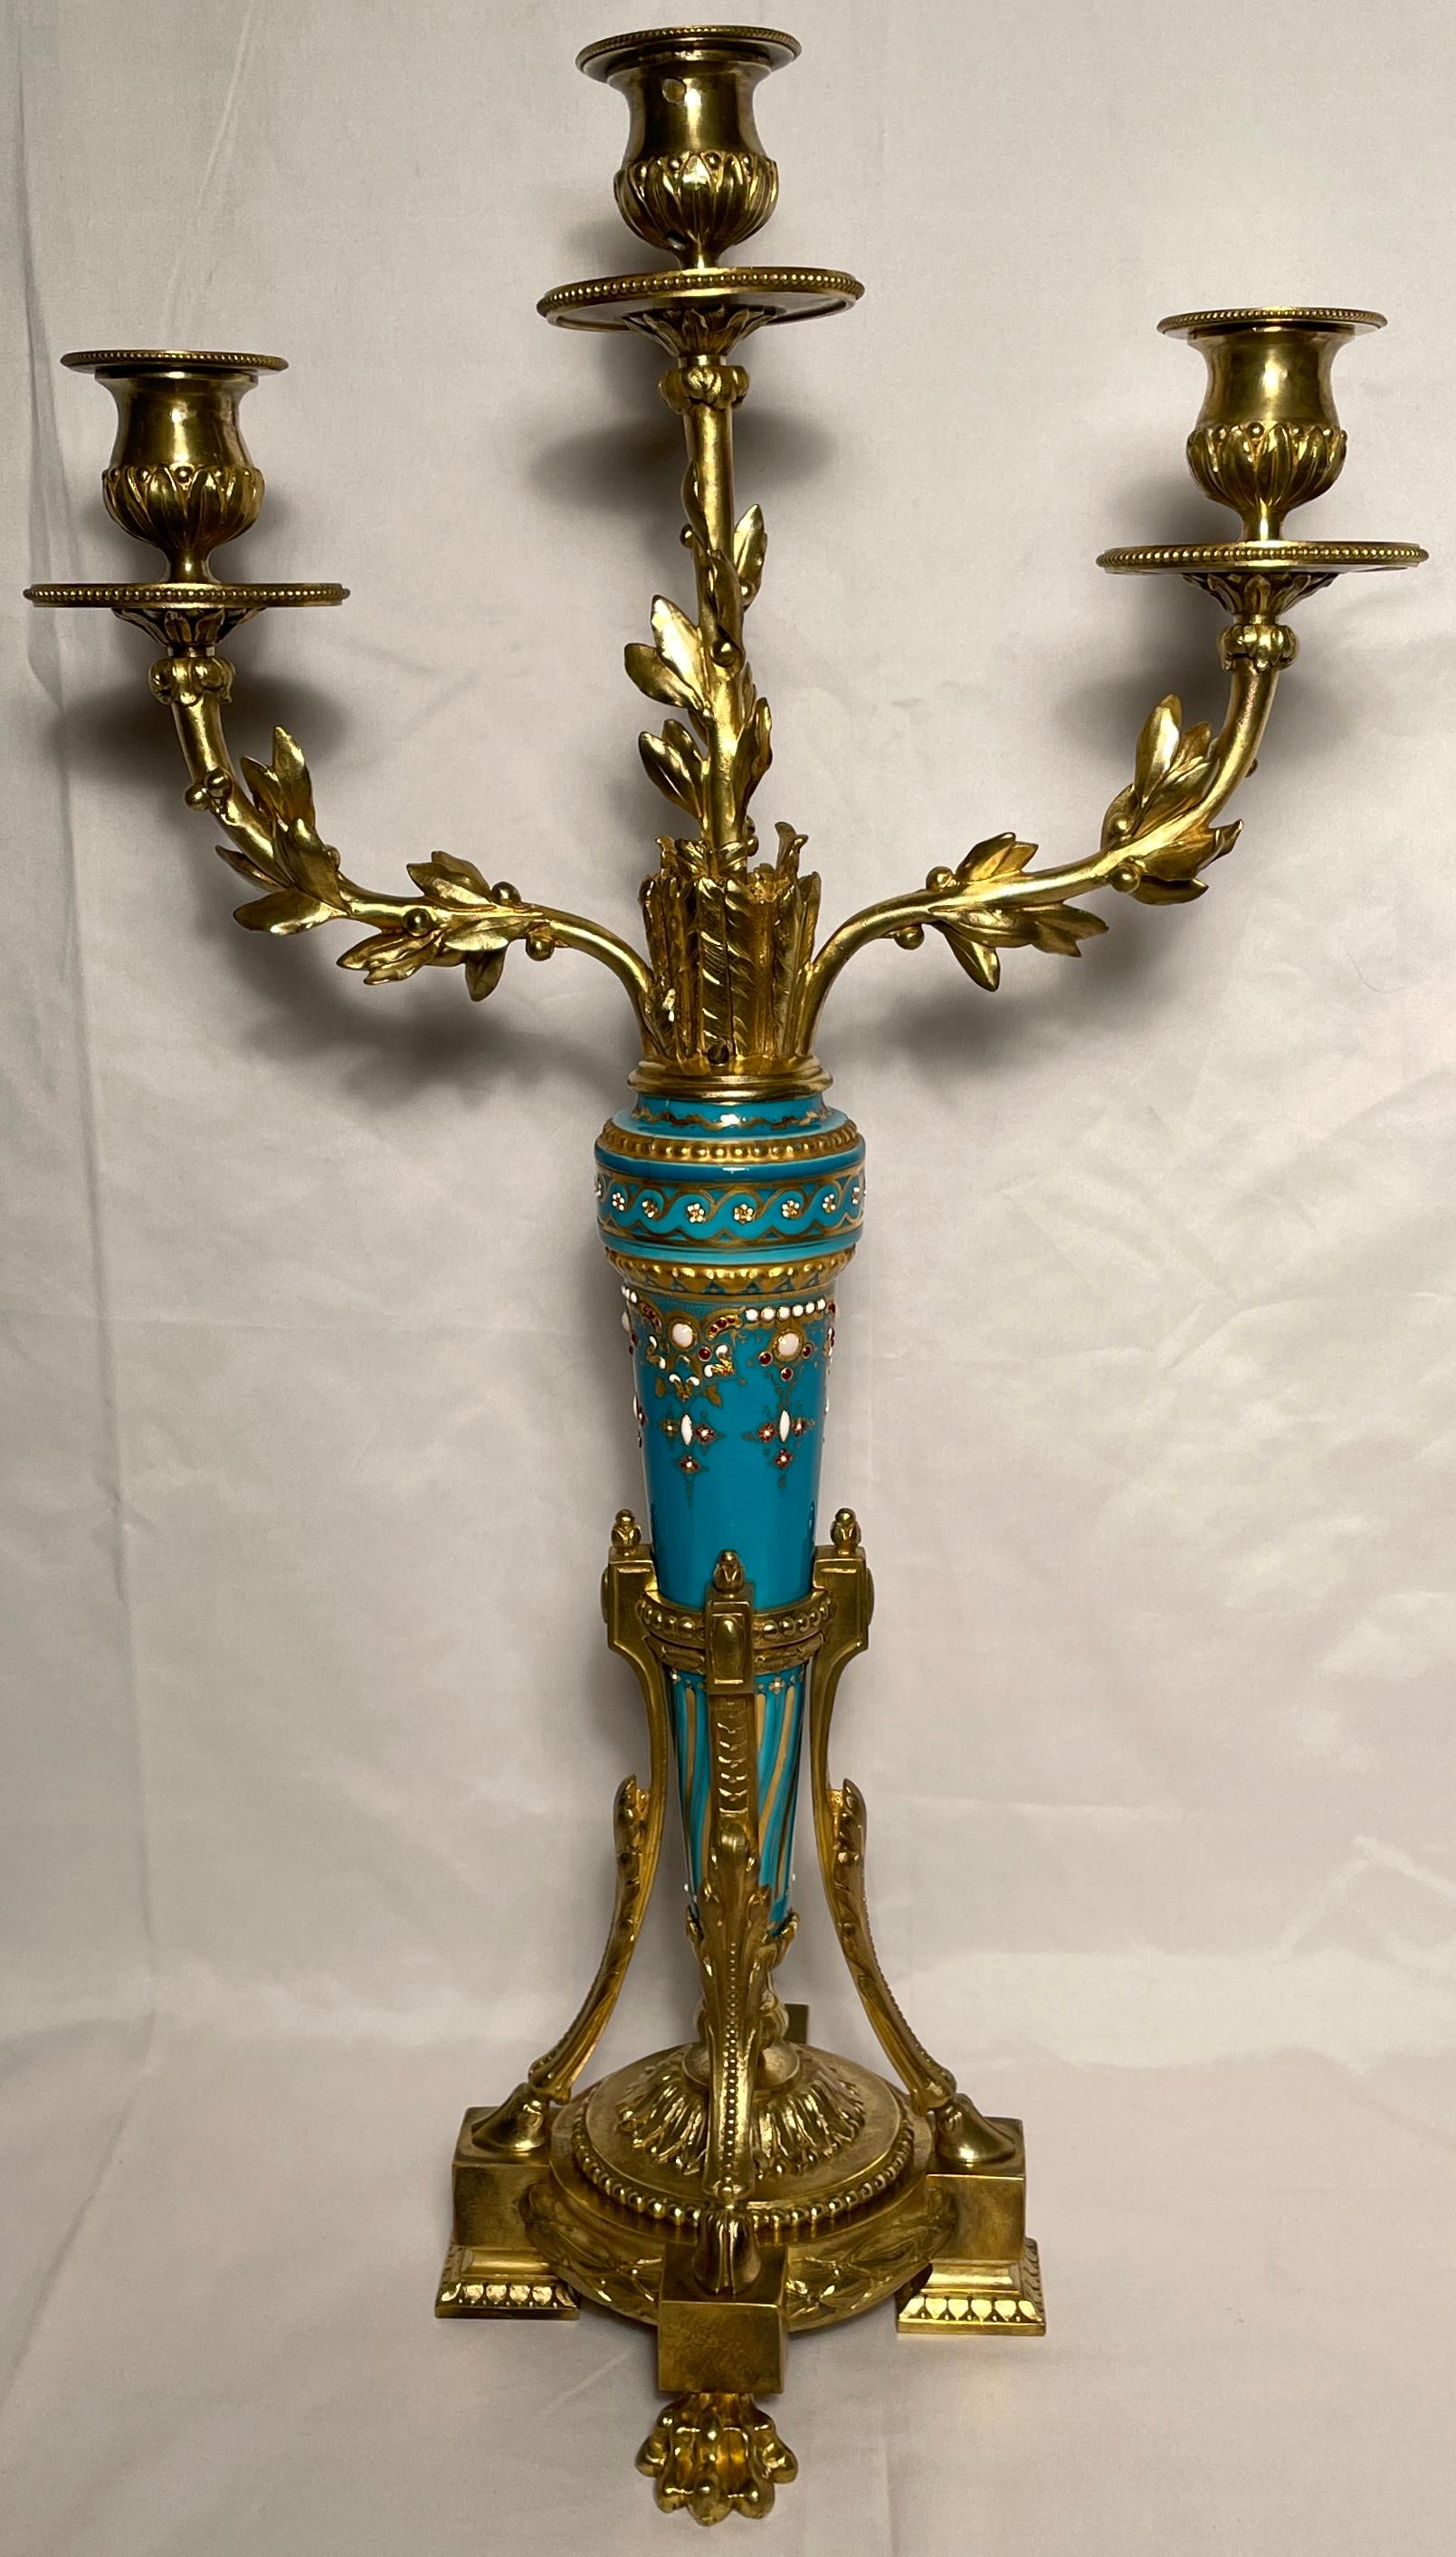 Antique French ormolu bronze candelabra with rare jeweled enamel blue porcelain, circa 1860-1880.